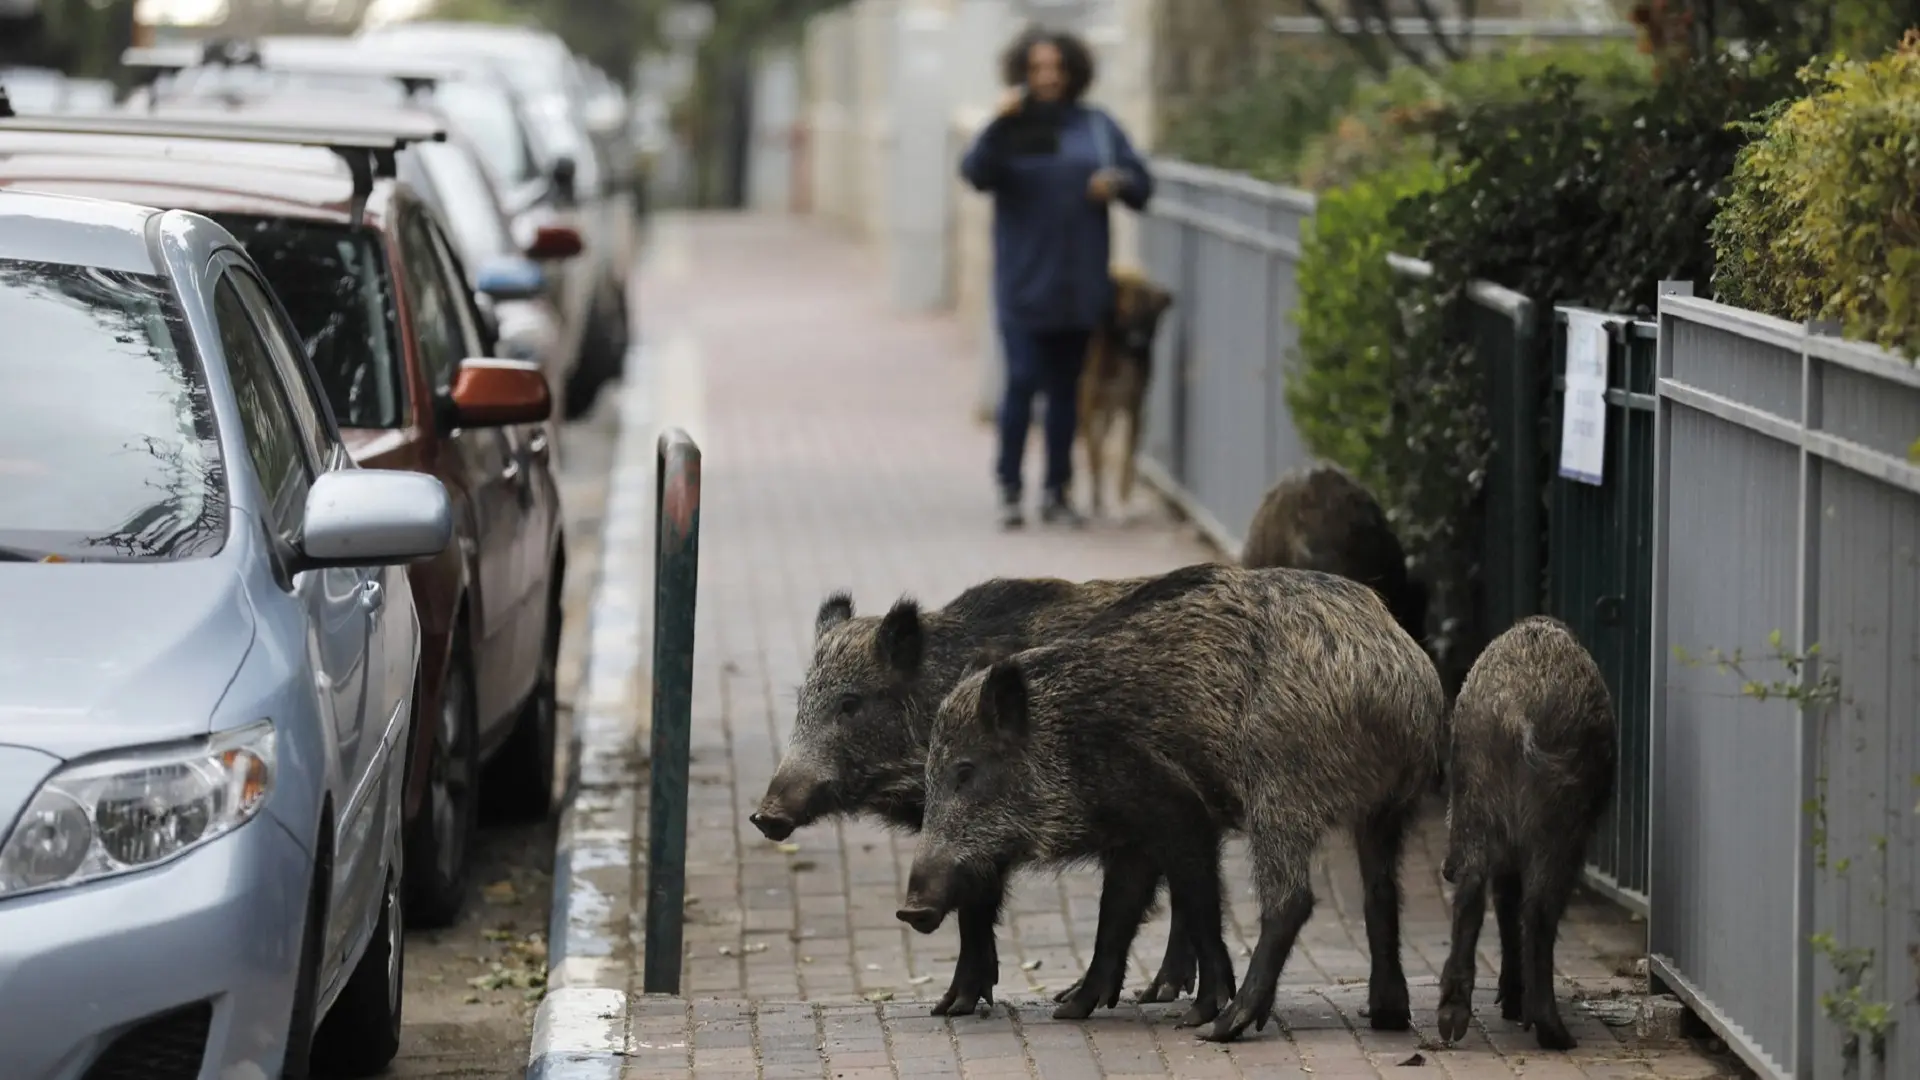 divlje svinje u Haifi, Izrael - 5 dec 2019 - profimedia-655e6911e4920.webp